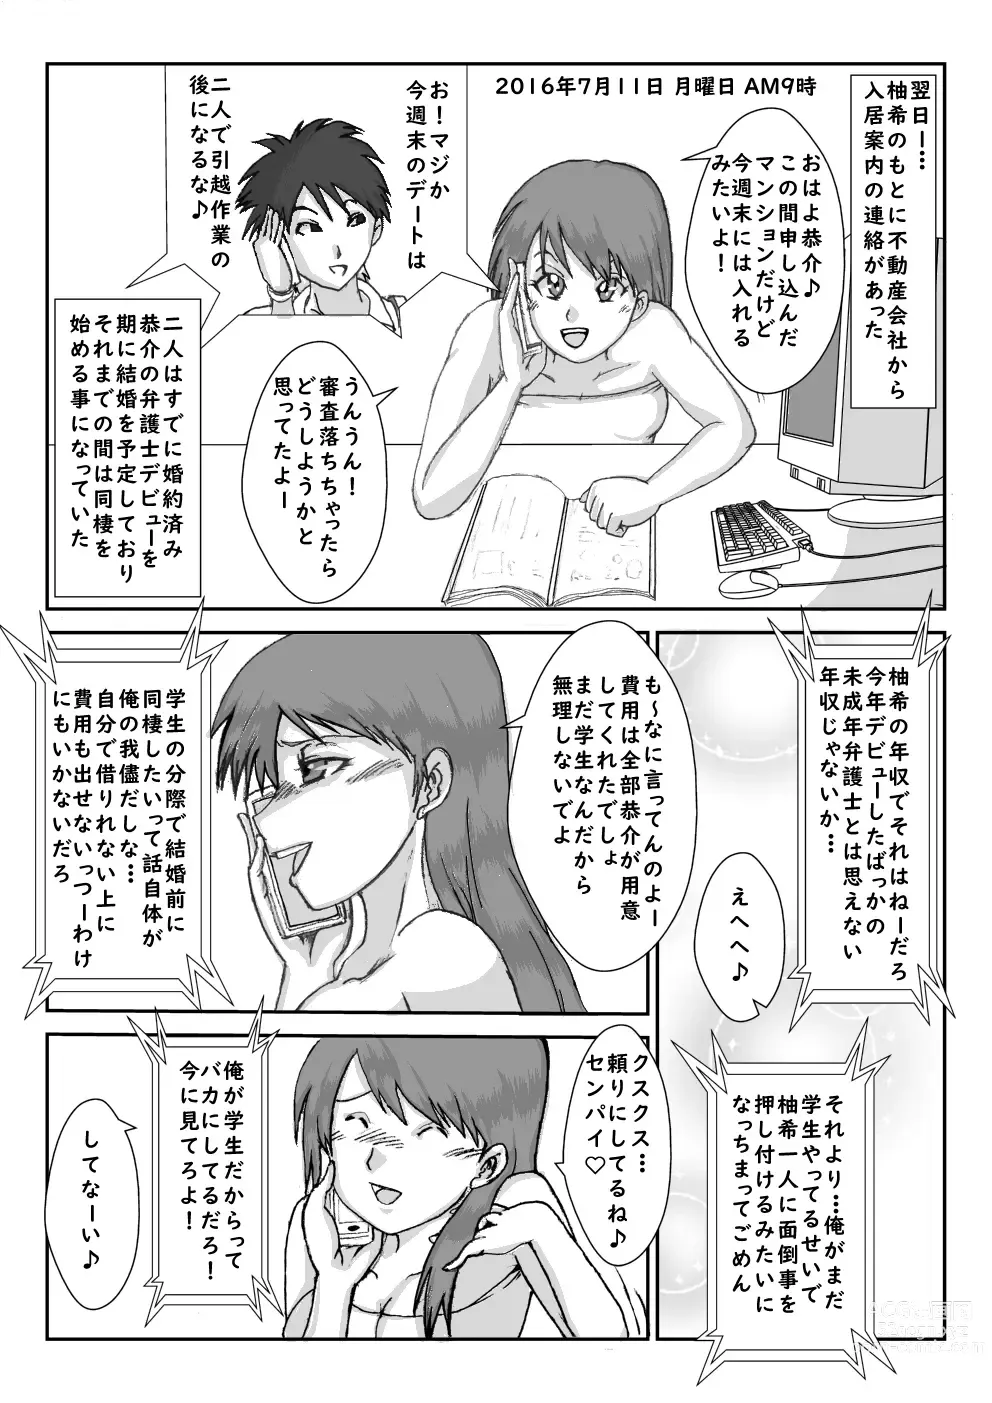 Page 4 of doujinshi Sennou